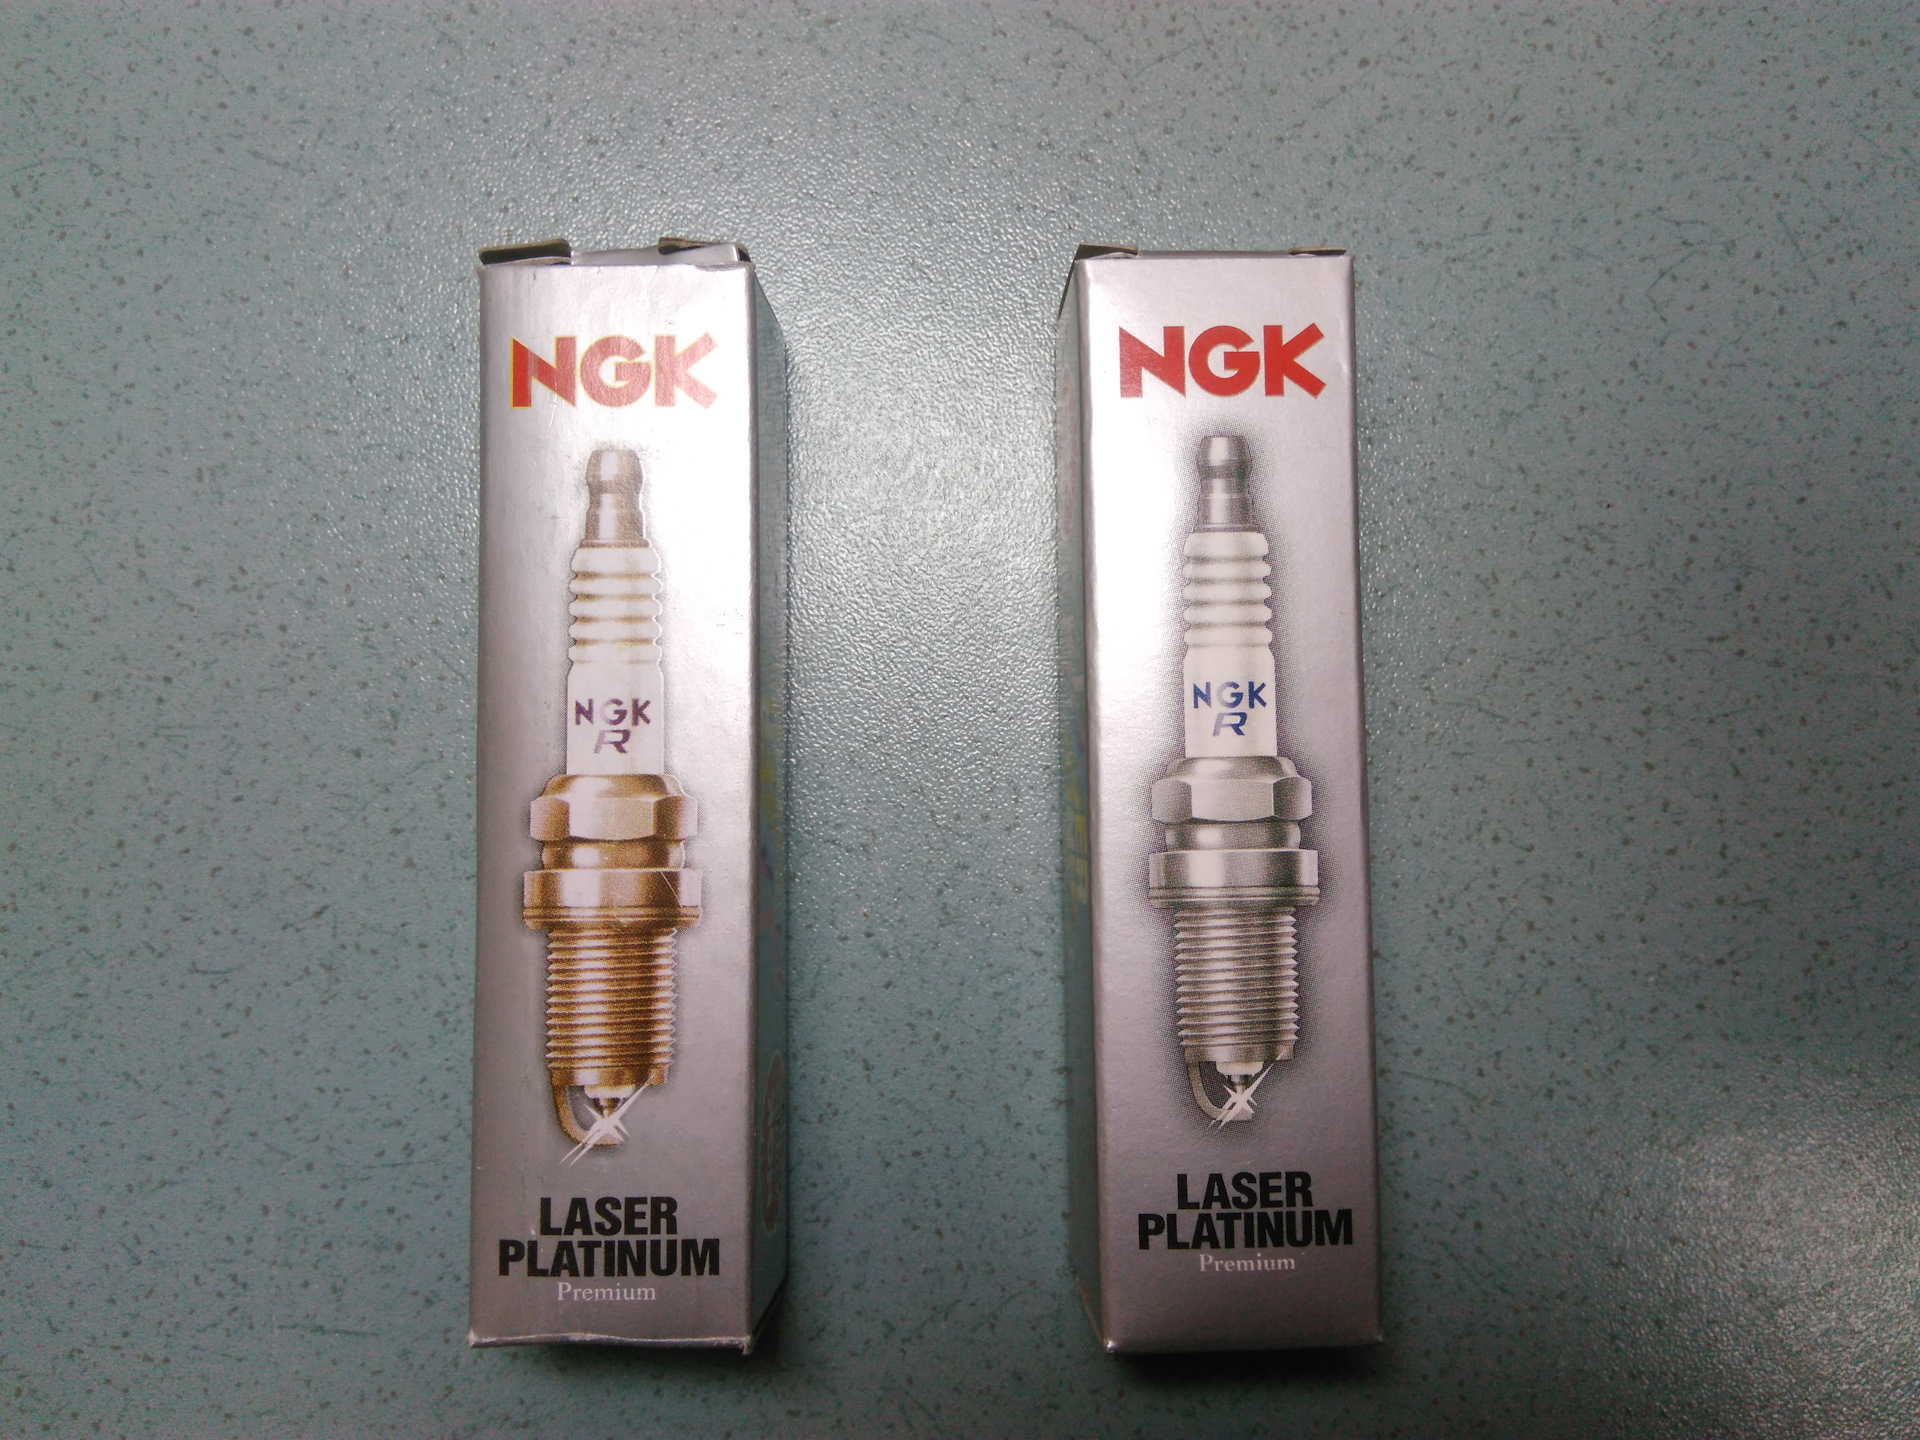 Ngk как отличить подделку от оригинала. NGK 95463 свеча зажигания. NGK svecha podelka Orginal. Оригинальные свечи NGK 22401-ed816. NGK Laser Platinum свечи оригинал.